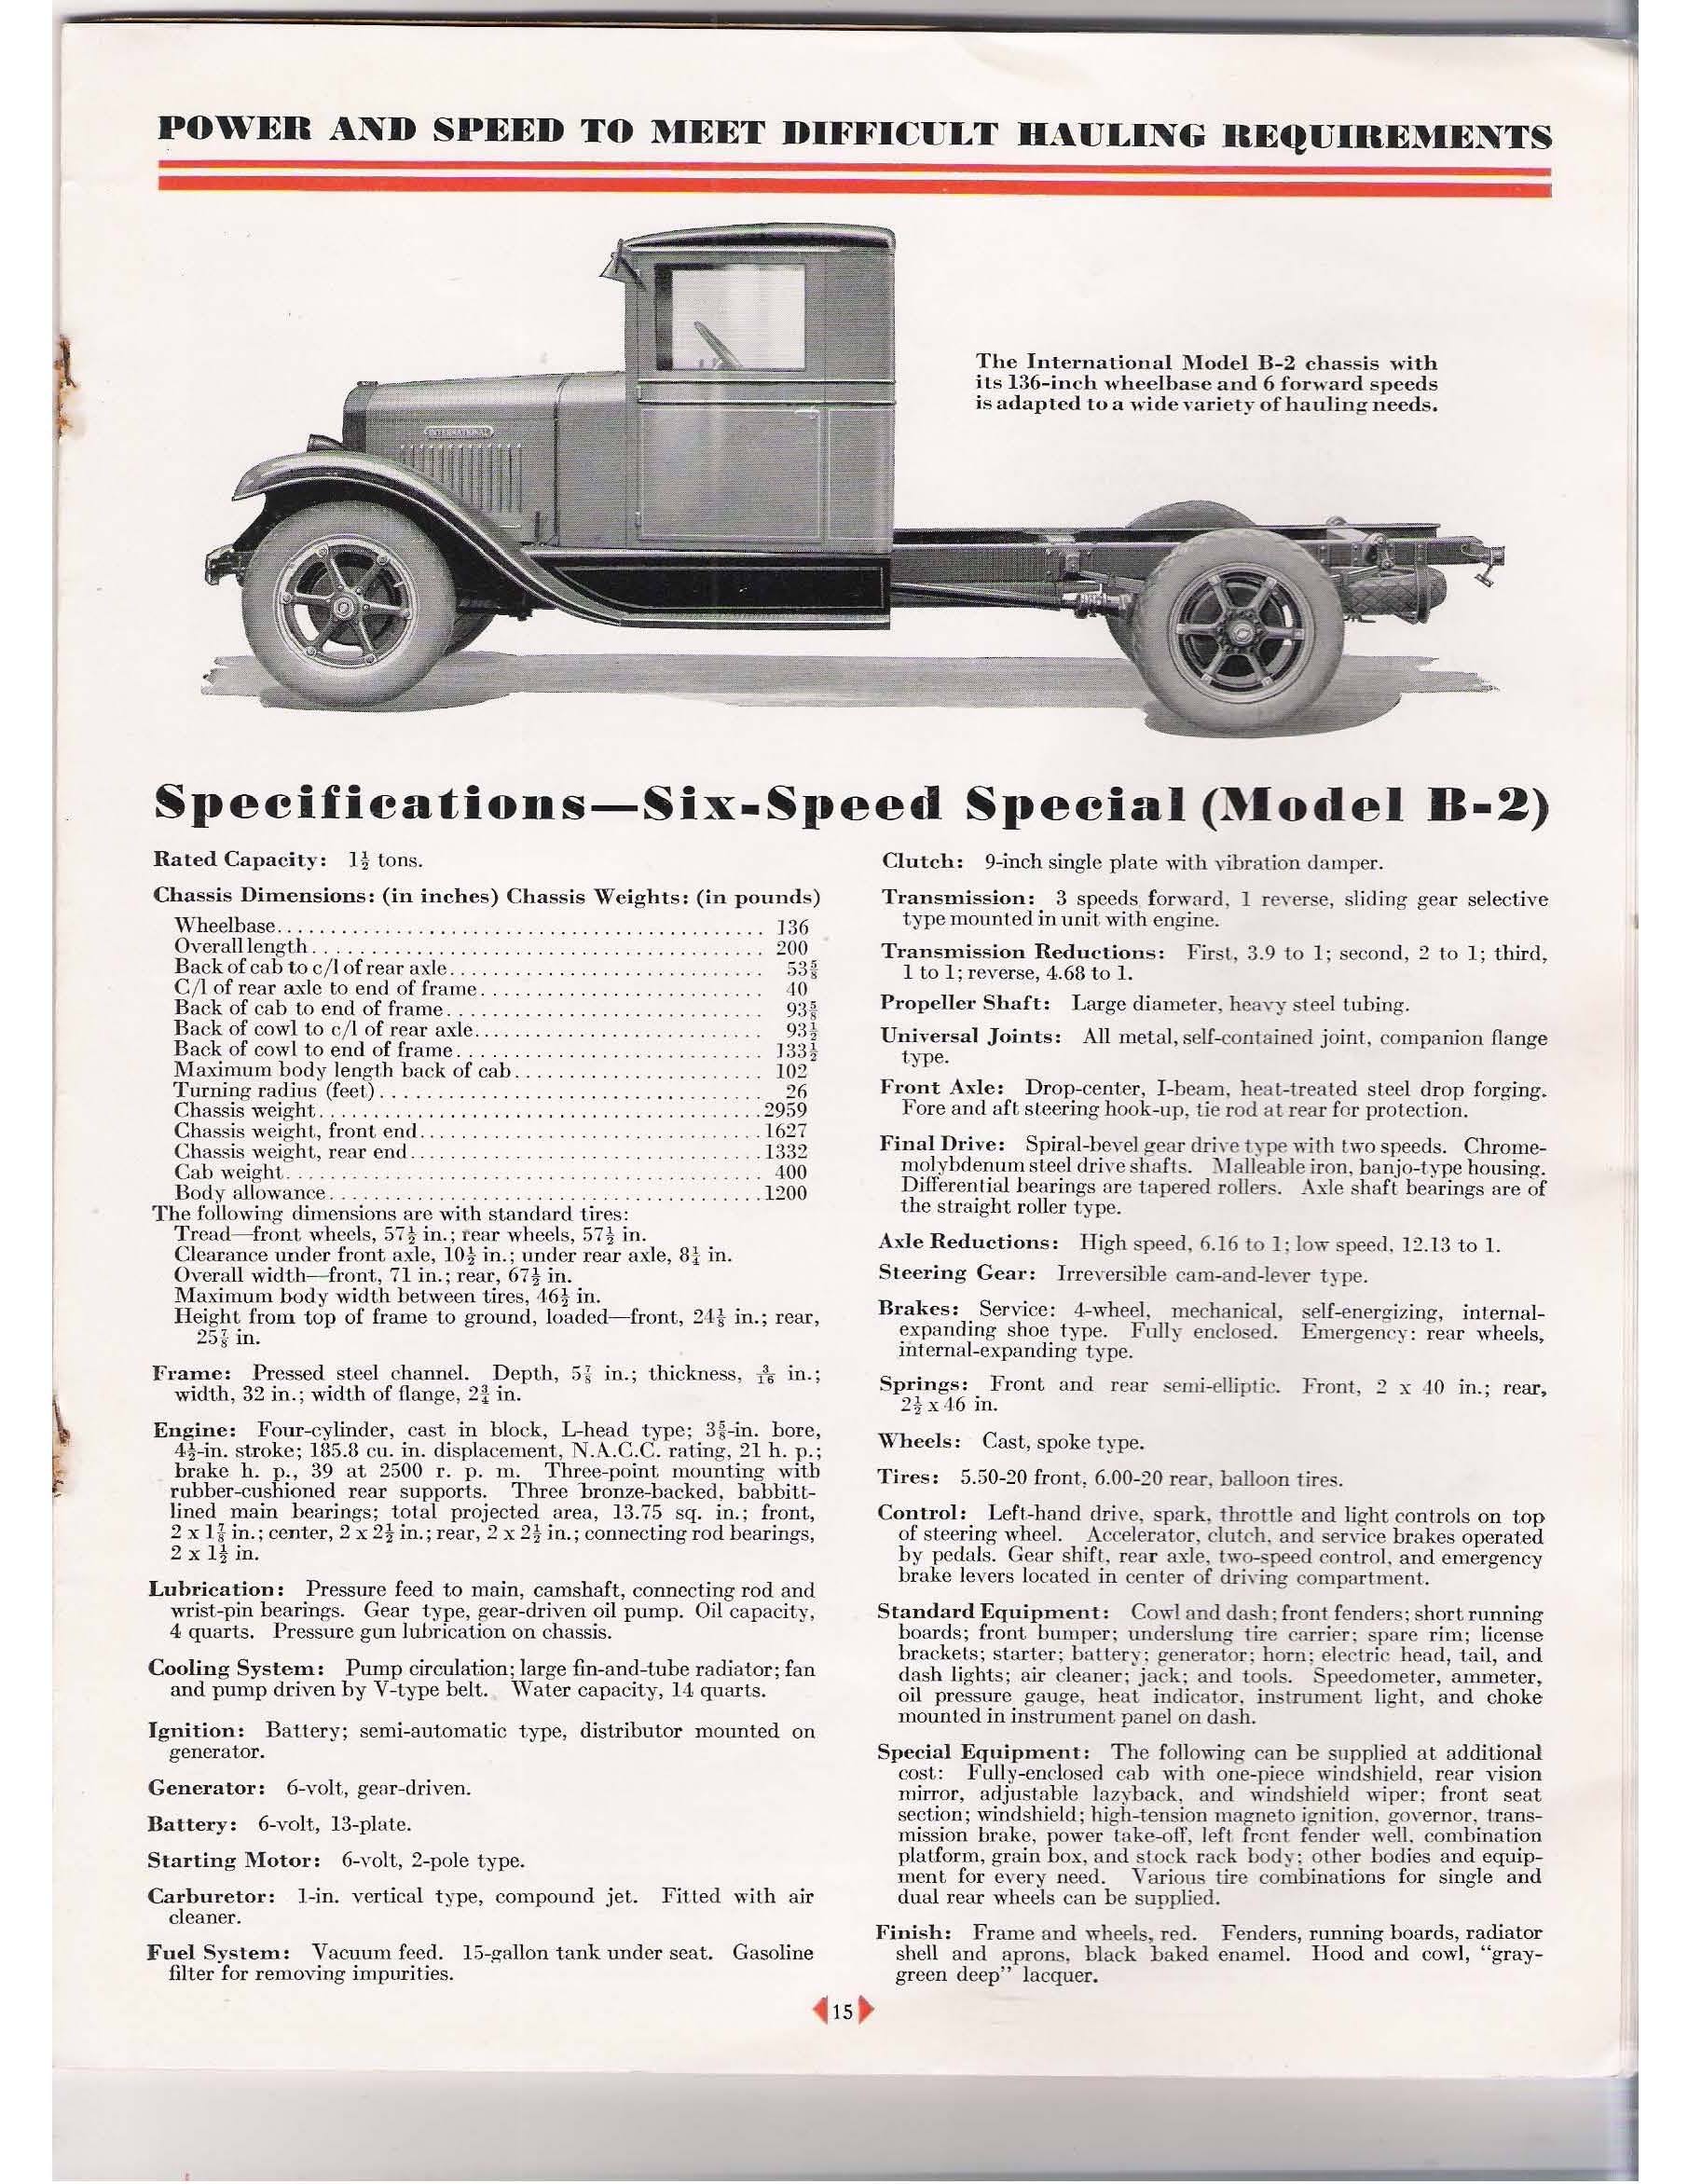 1931 International Spec Sheets-11